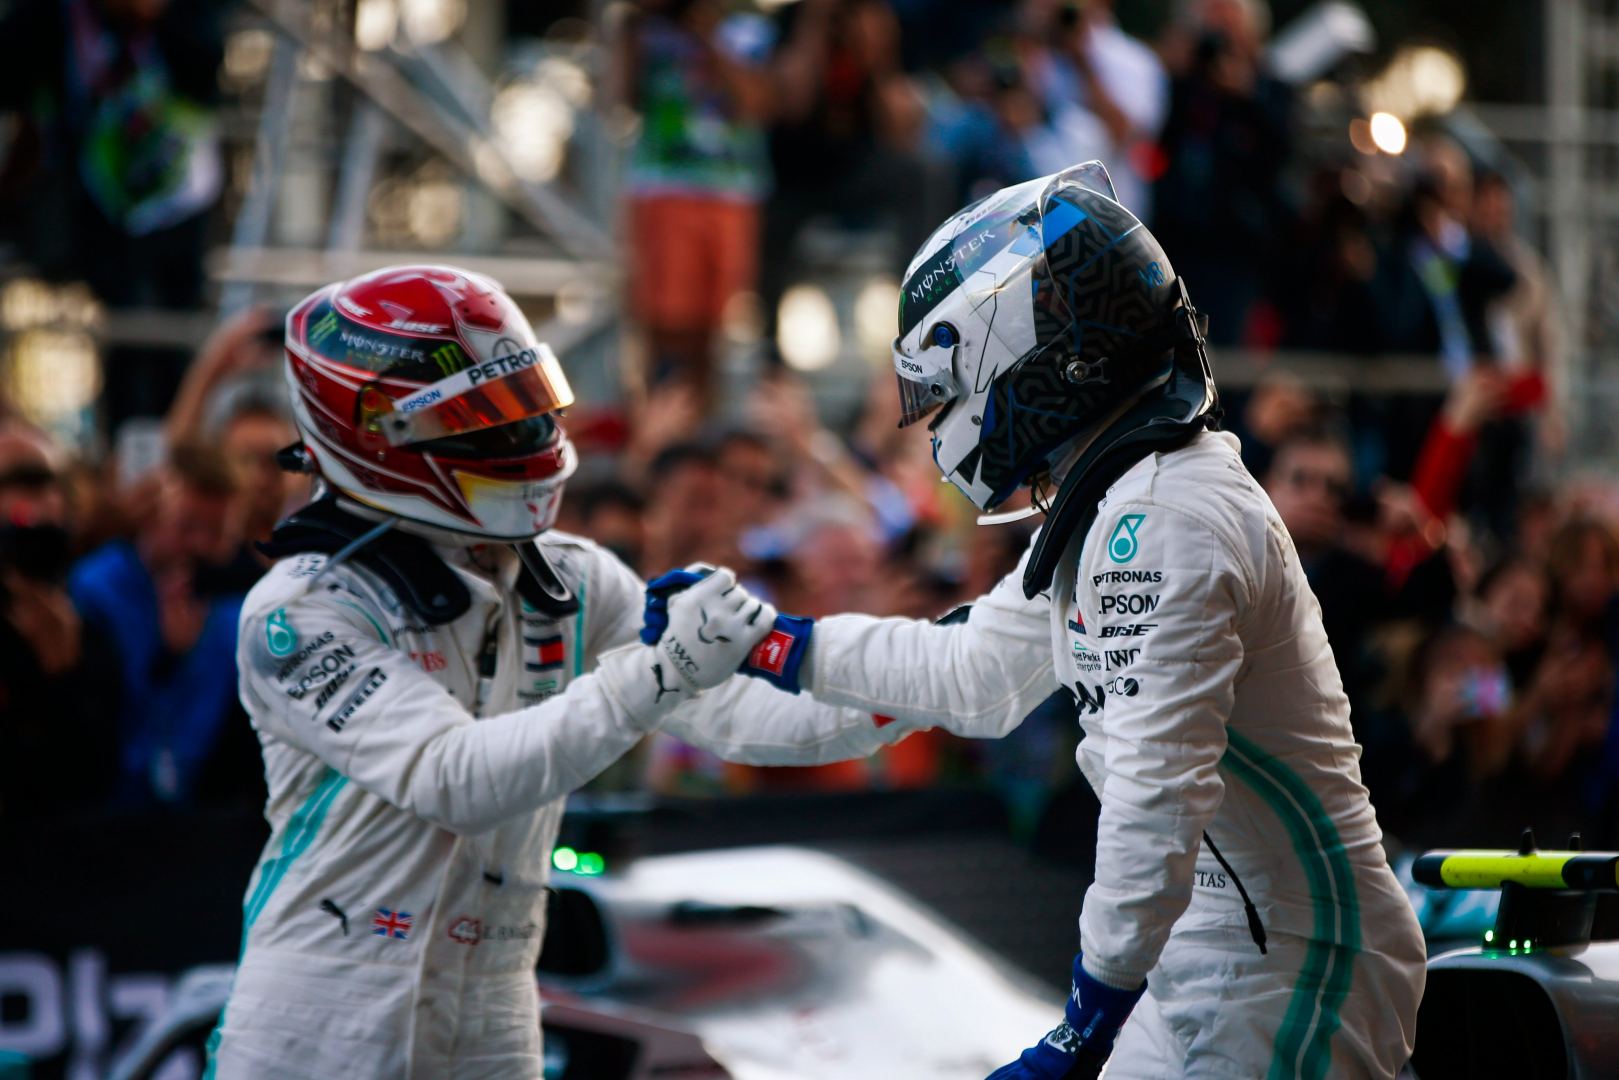 Команда Mercedes-AMG PETRONAS поделилась снимками с прошлых гонок F1 в Баку (ФОТО)